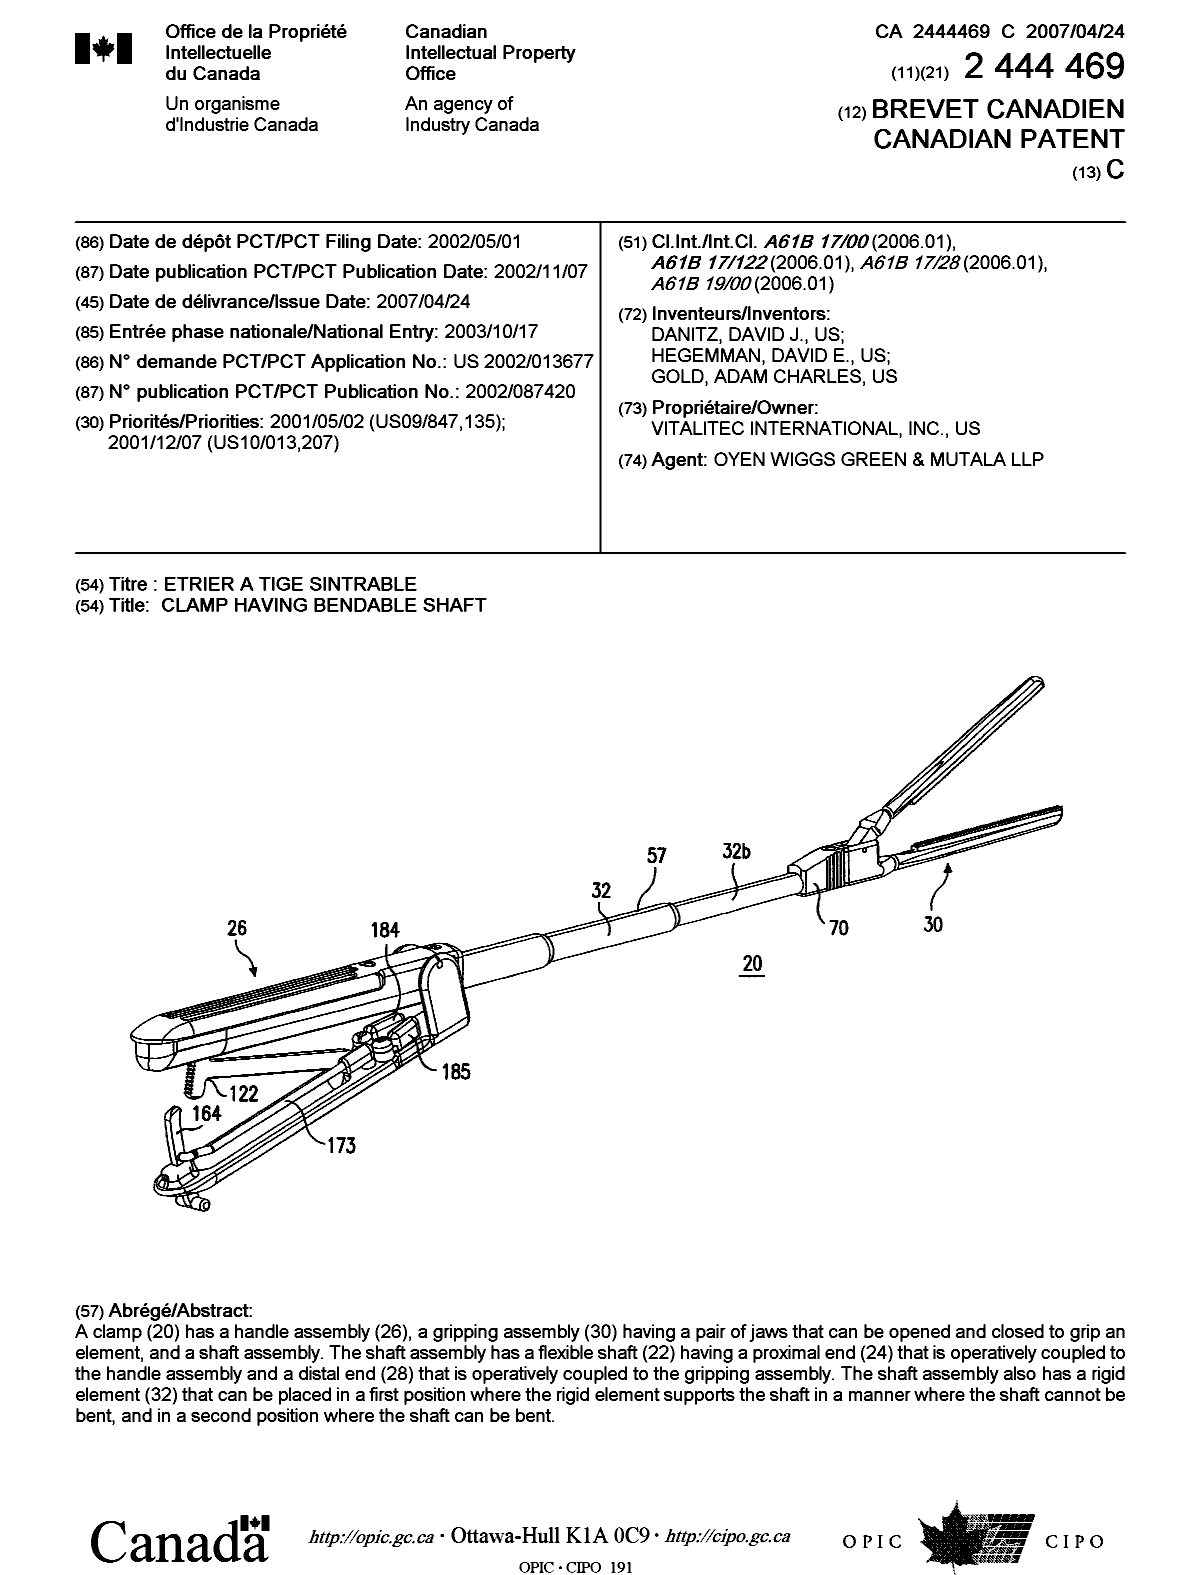 Document de brevet canadien 2444469. Page couverture 20061210. Image 1 de 1